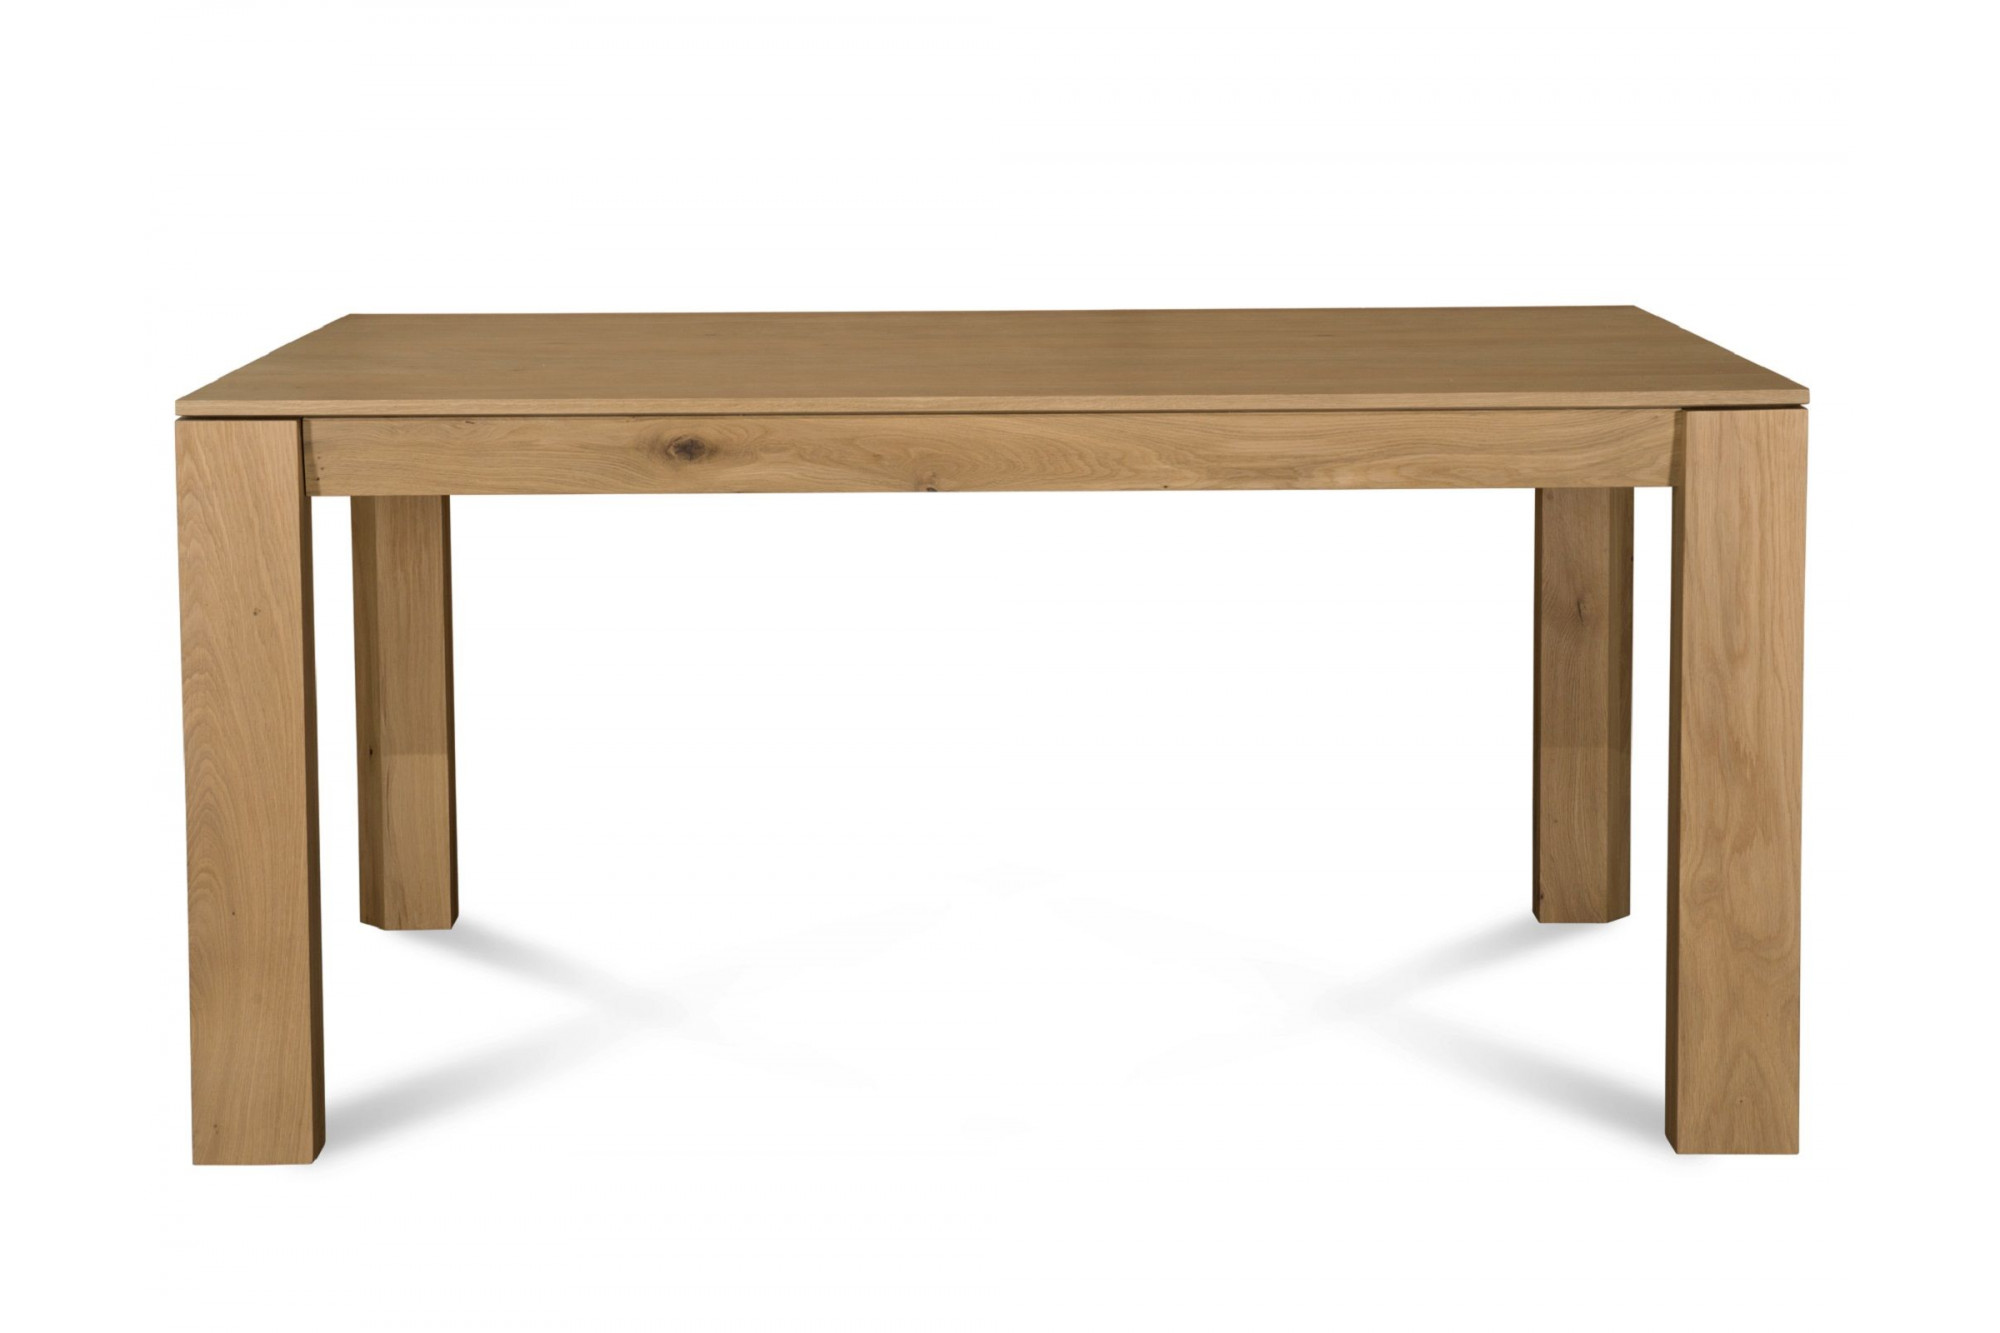 Table rectangulaire extensible en bois massif : 6 personnes